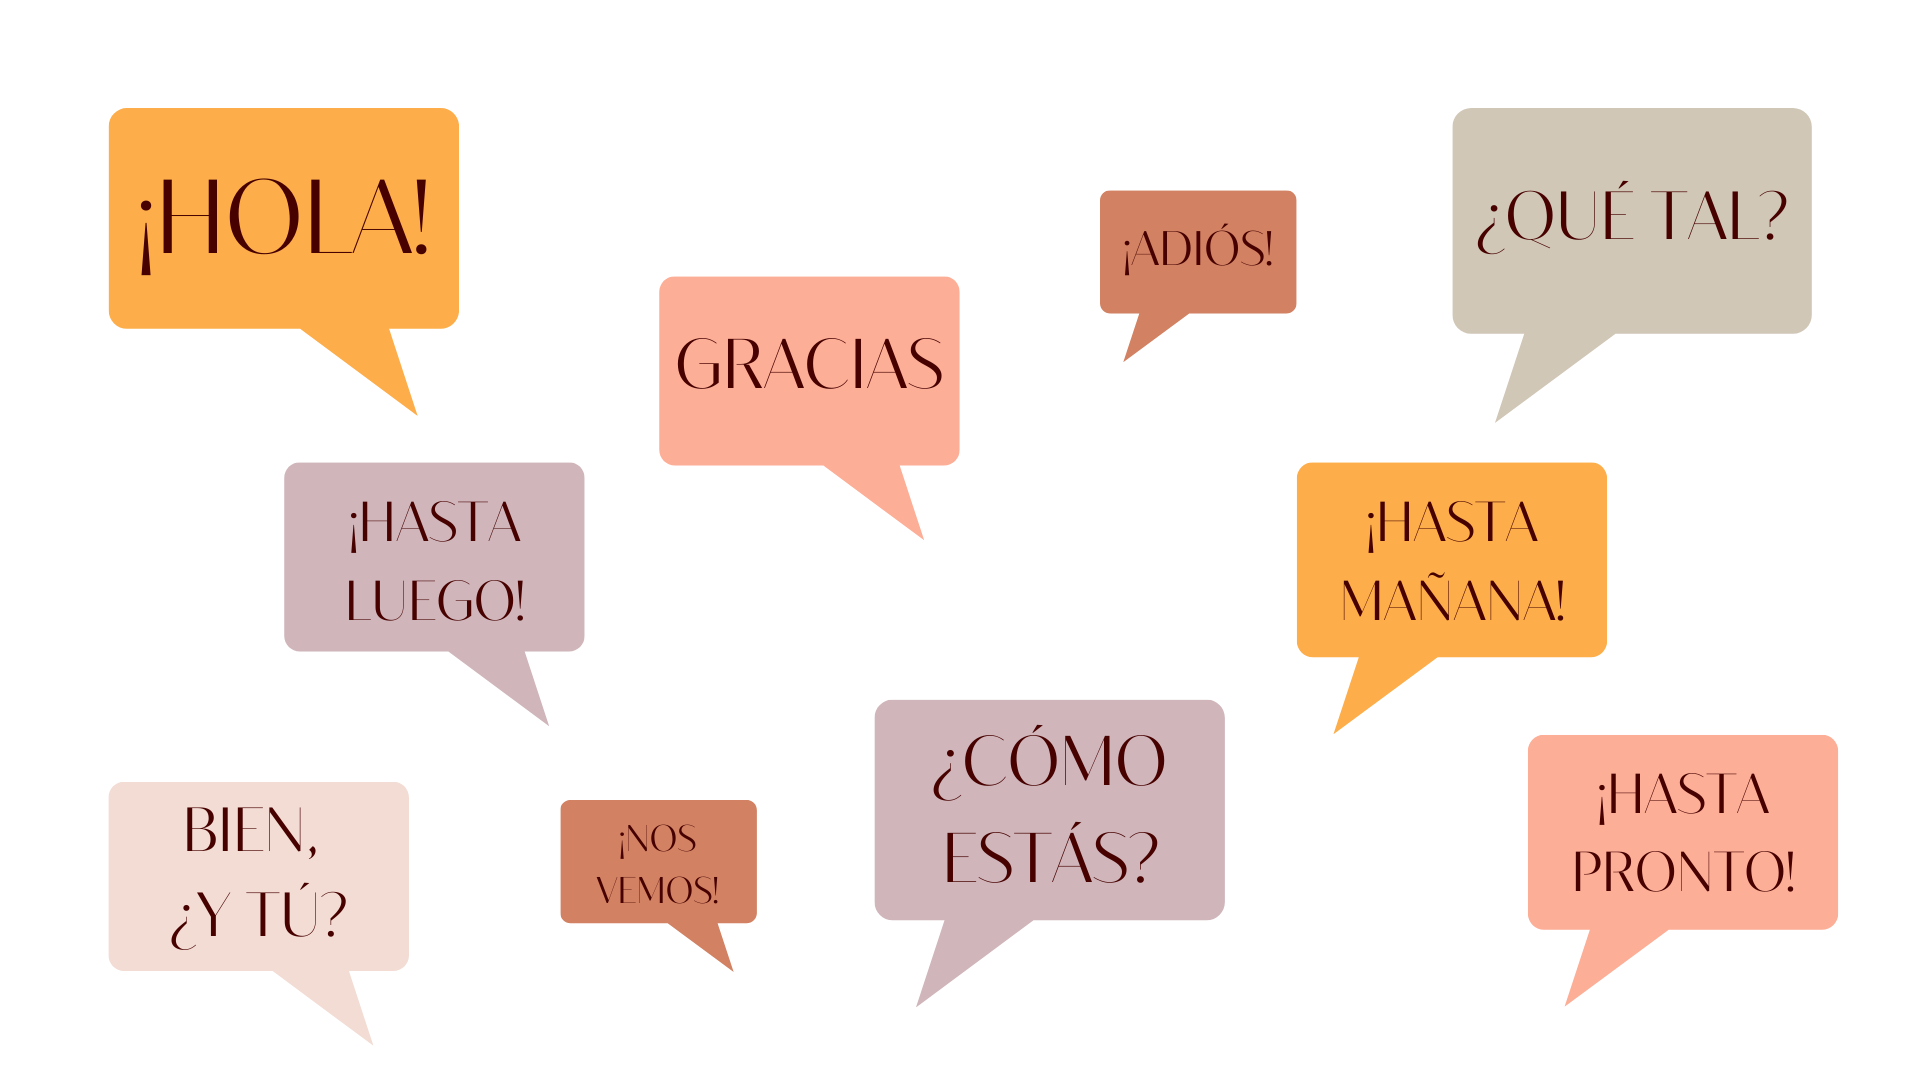 Русско-испанский разговорник, часто используемые фразы и слова, для туриста в испании